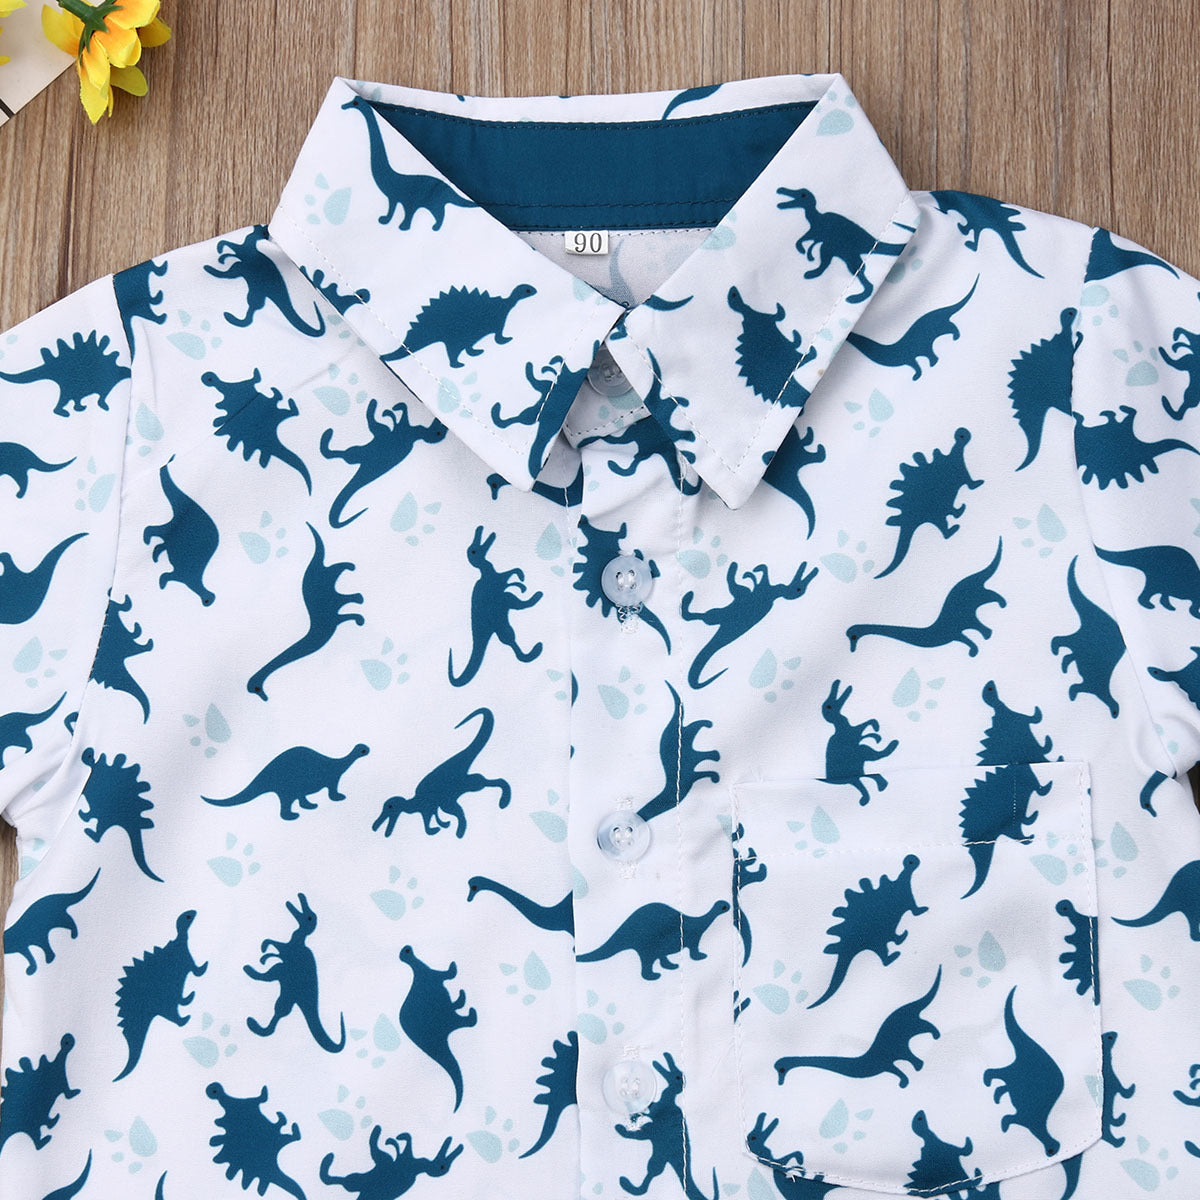 Dinosaur Print Shirt And Pants For Boys